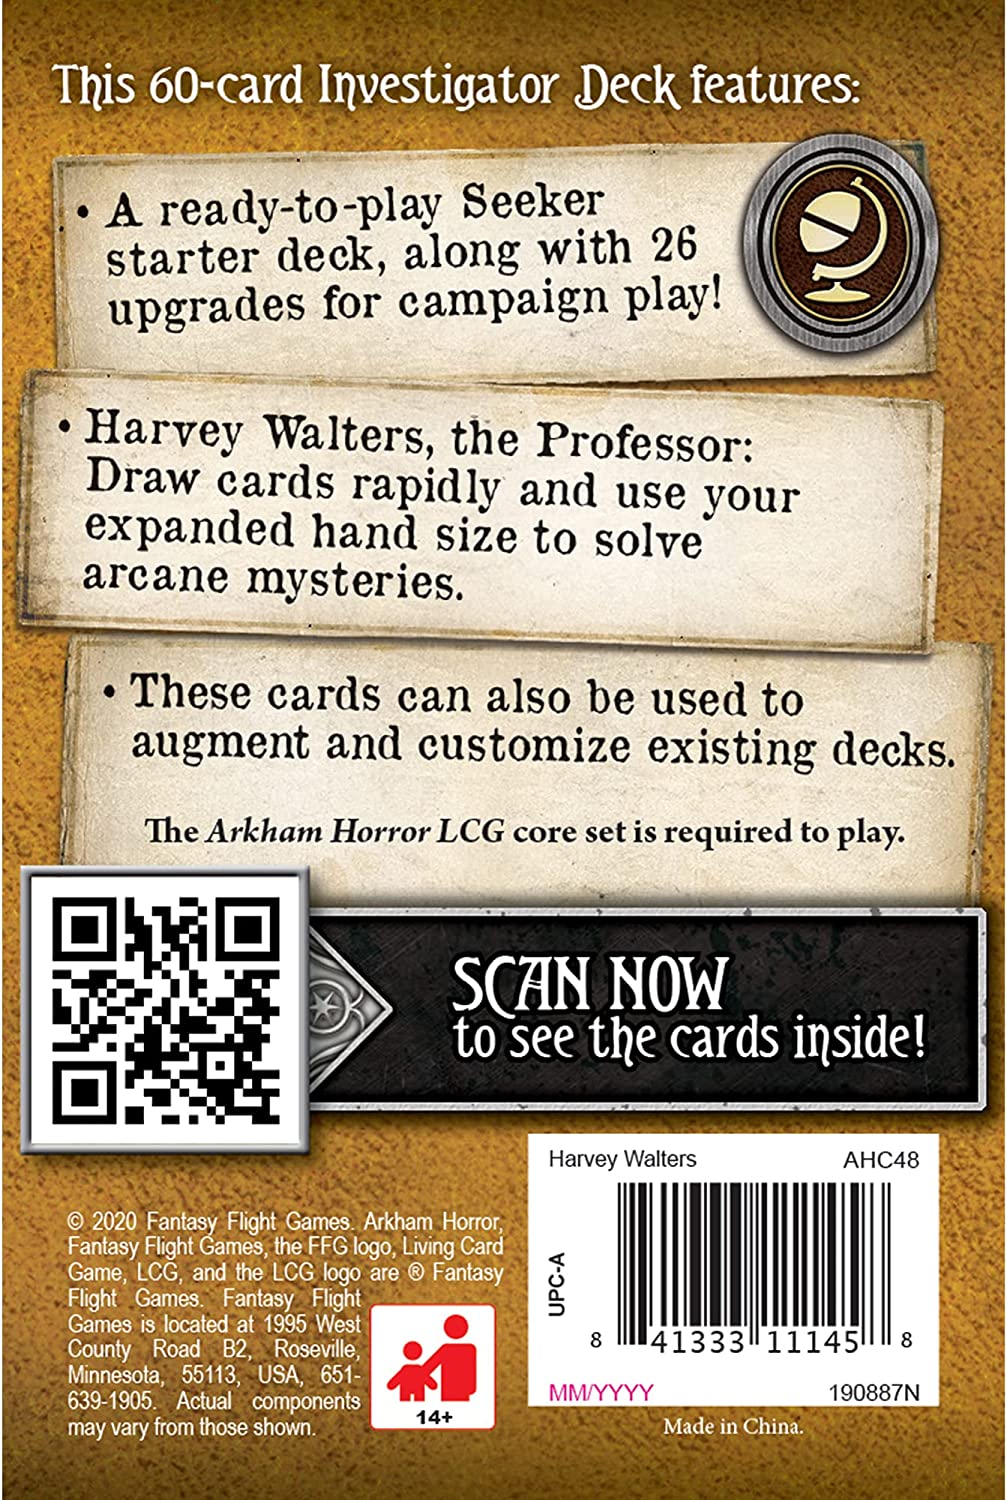 Arkham Horror: The Card Game - Harvey Walters Investigator Starter Pack